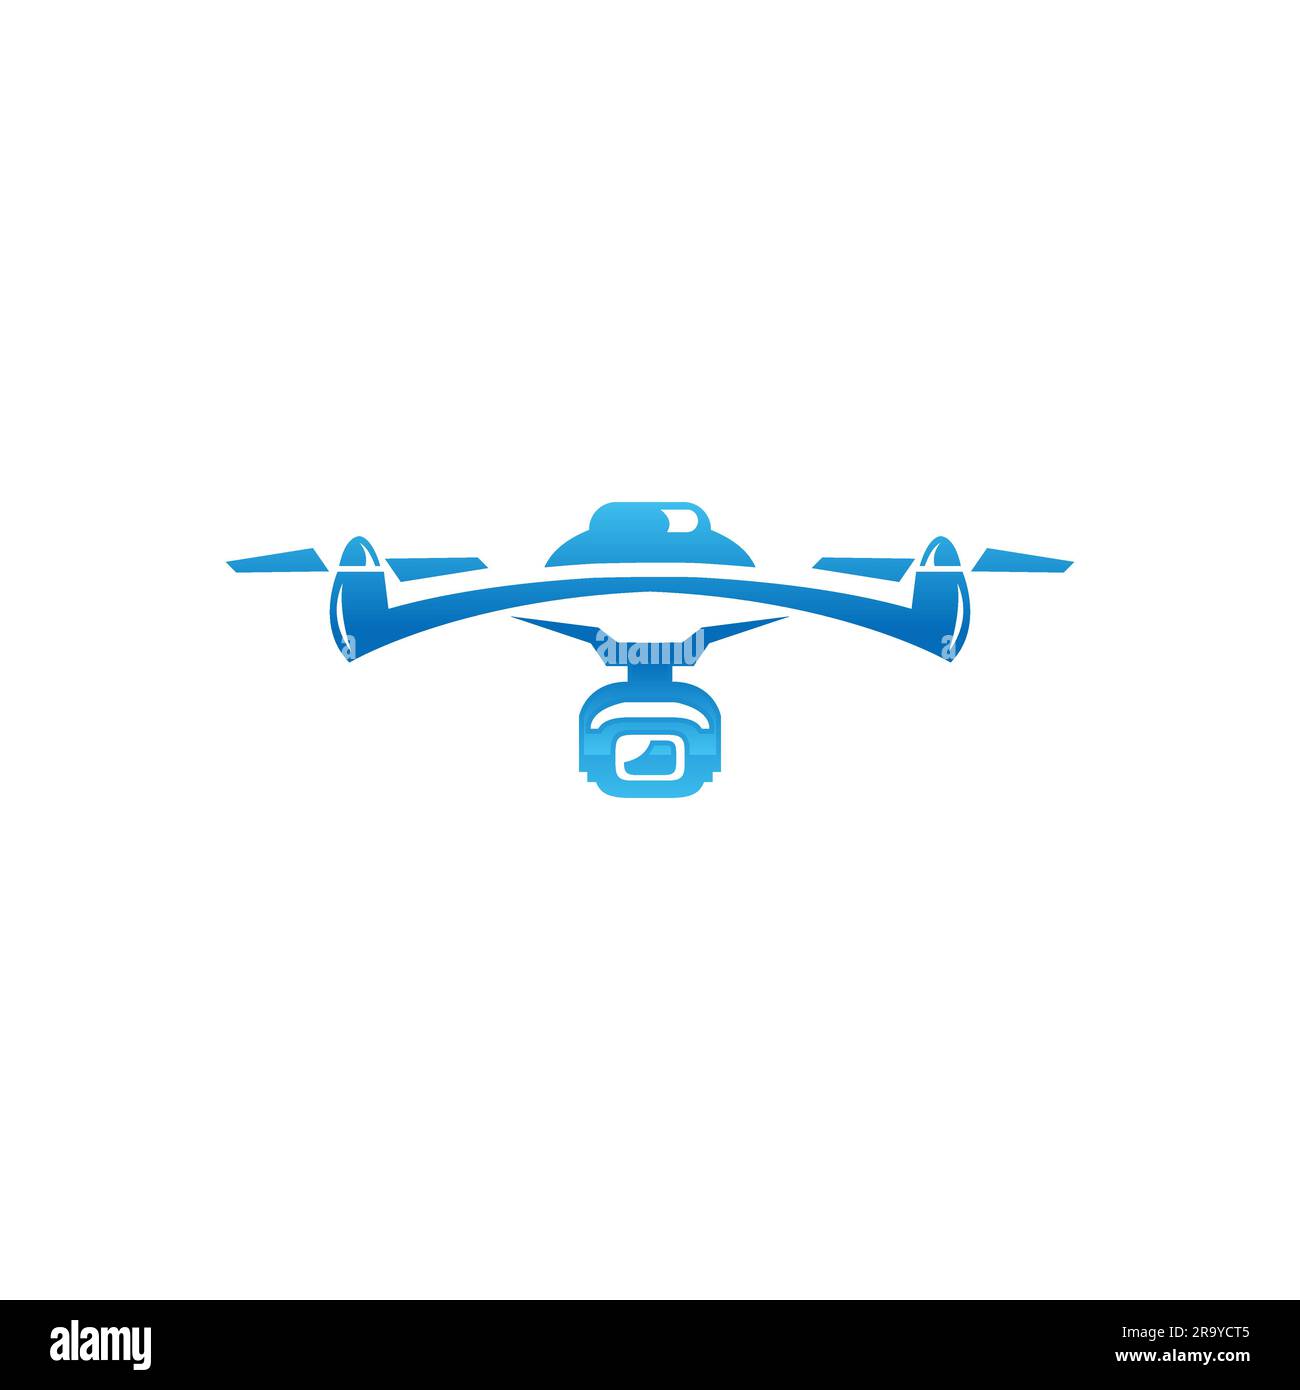 Esclusivo logo droni moderno e minimalista logo vettoriale e astratto.EPS 10 Illustrazione Vettoriale